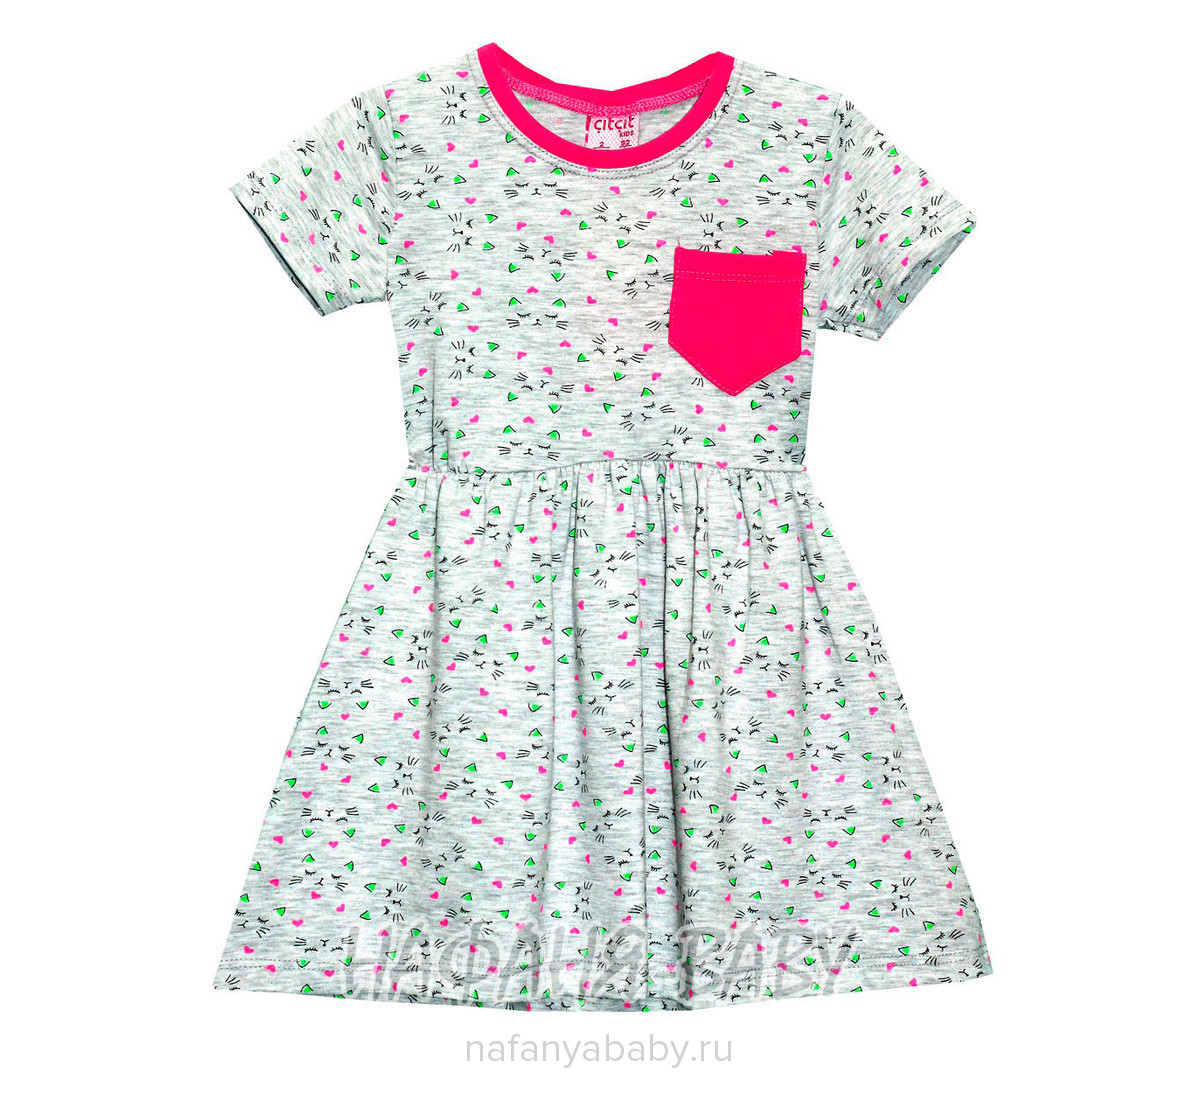 Детское платье, артикул 4066 Cit Cit арт: 4066, цвет серый меланж с розовым, оптом Турция